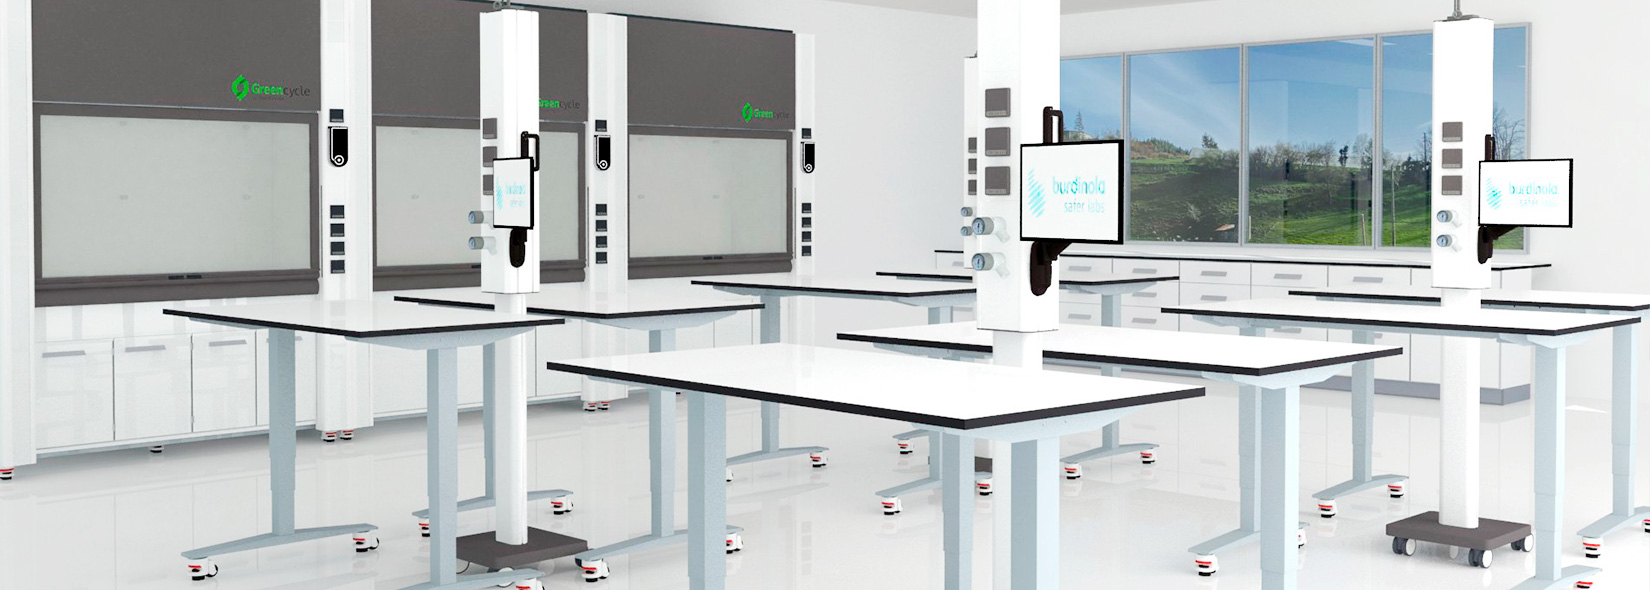 Imagen del interior de un laboratorio diseñado por Burdinola con las vitrinas de gases de recirculación móviles y los sistemas de servicio móviles o de techo